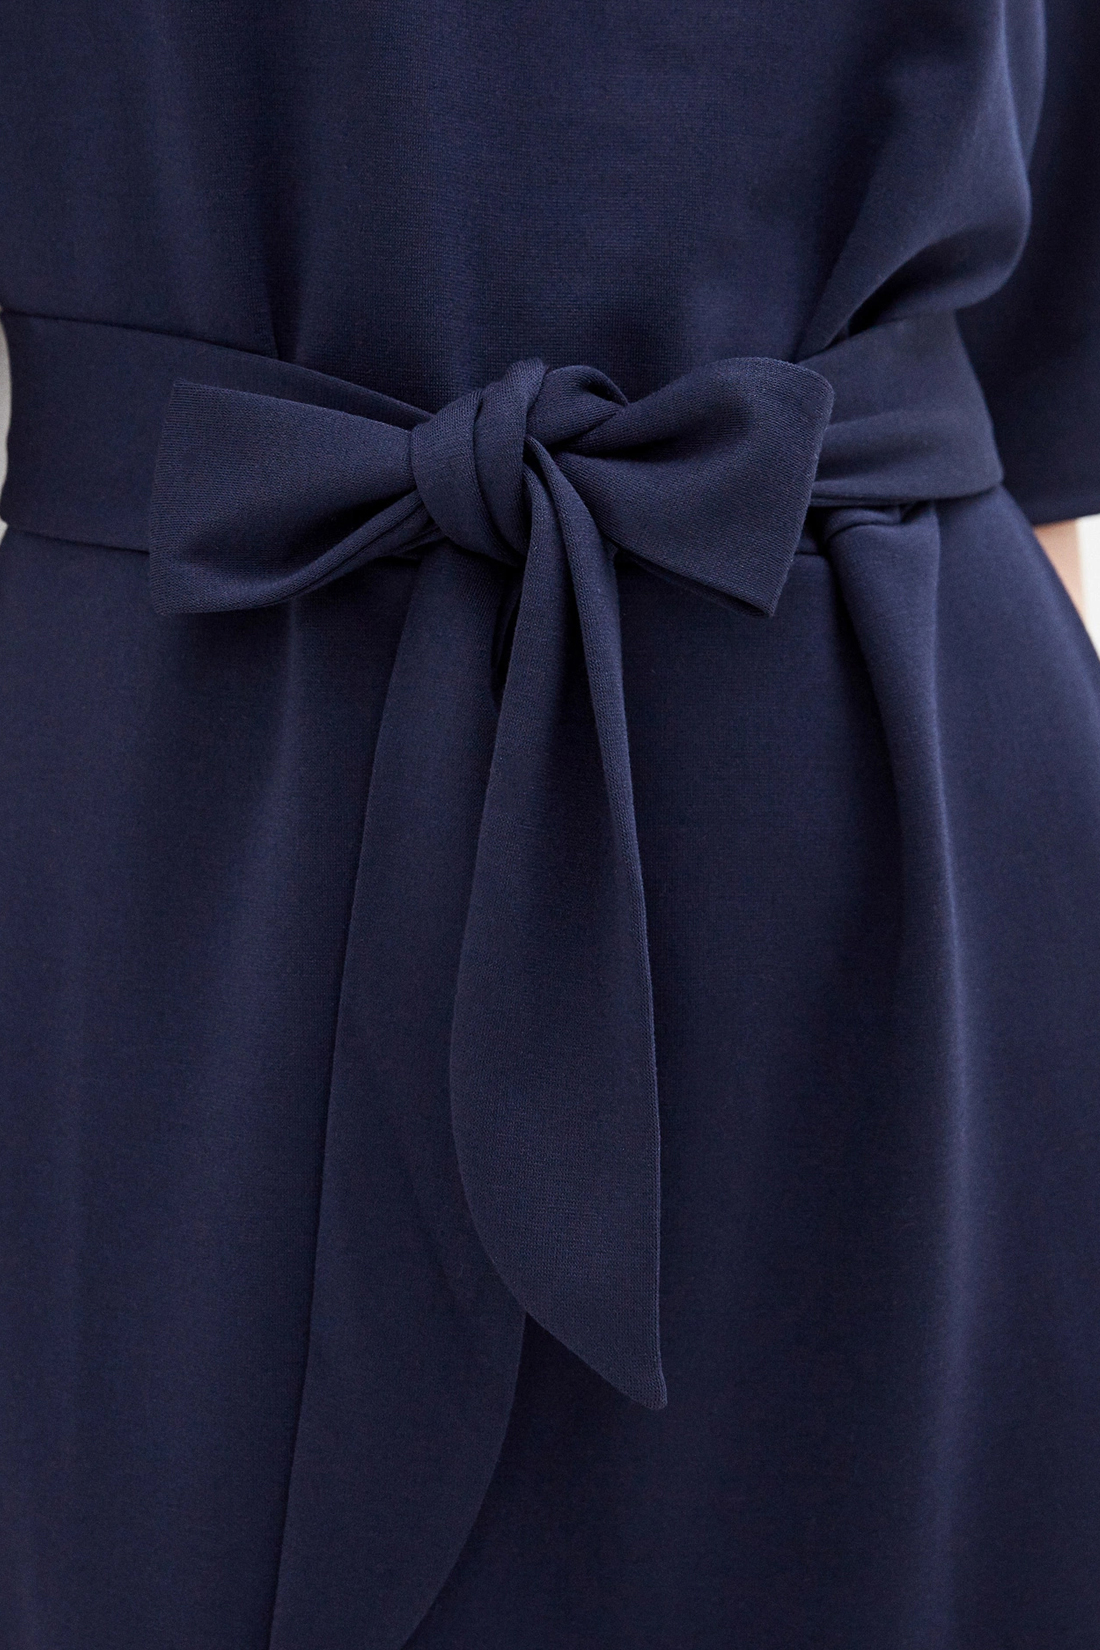 Платье с поясом (арт. baon B450021), размер XL, цвет синий Платье с поясом (арт. baon B450021) - фото 3